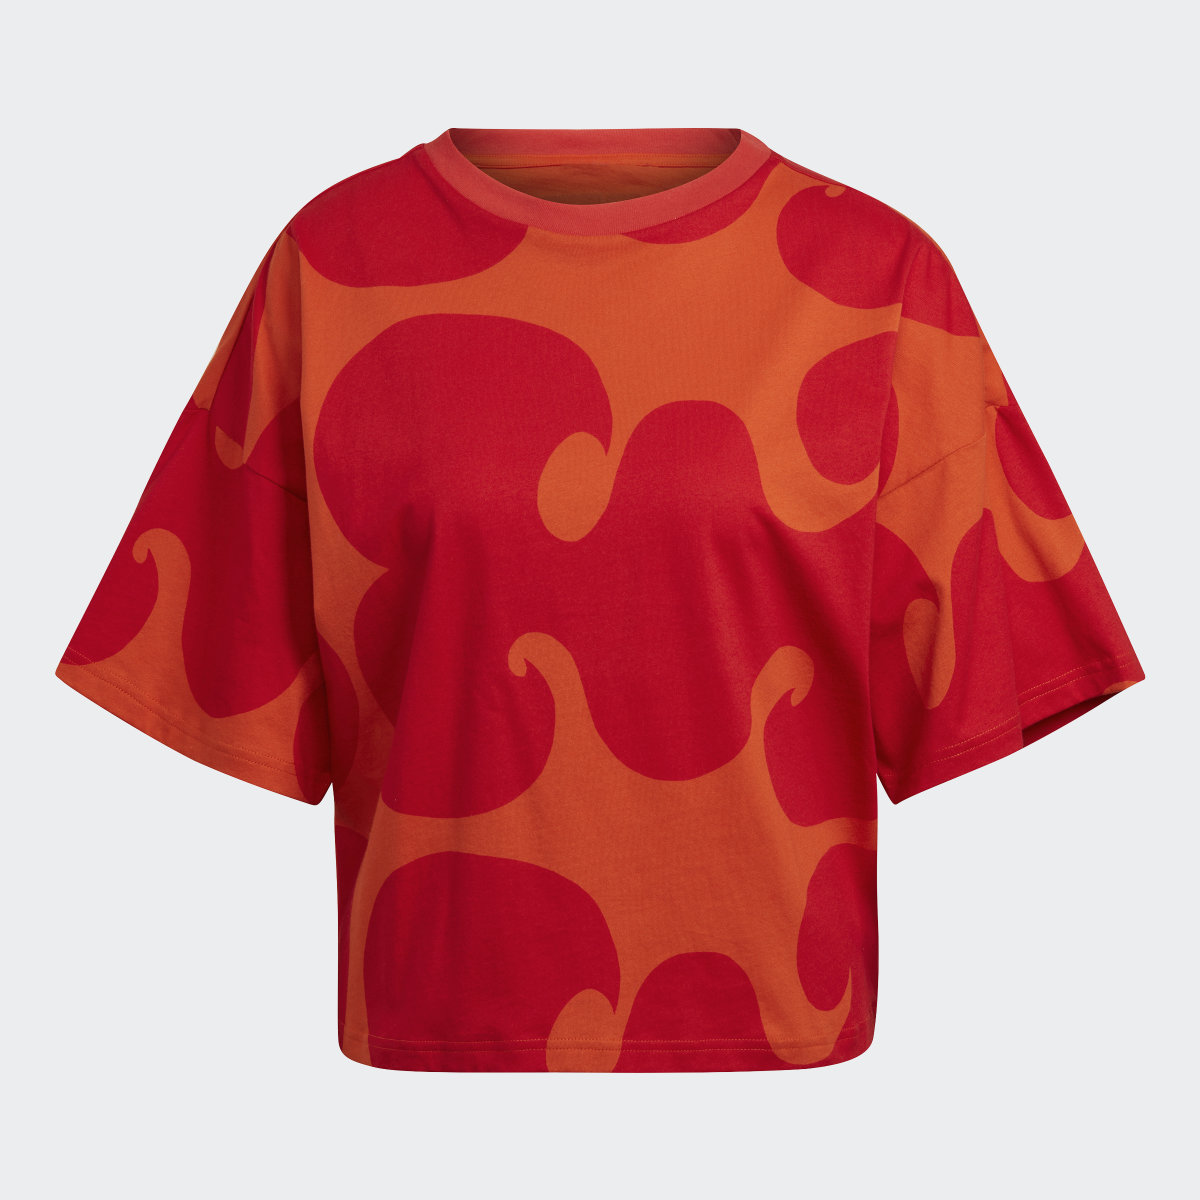 Adidas Marimekko T-Shirt. 5